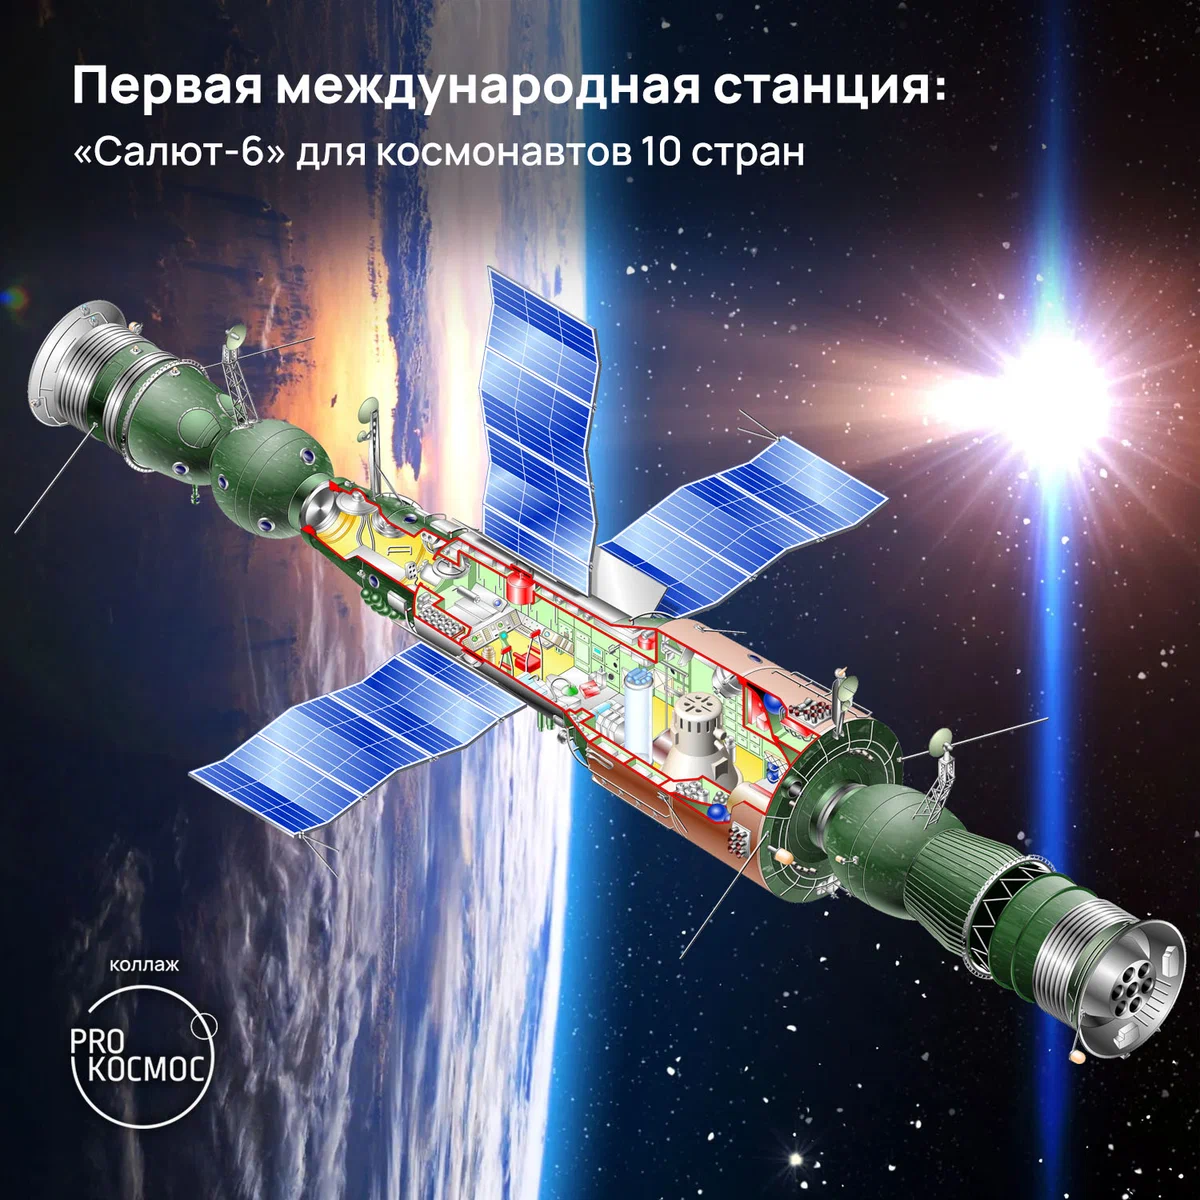 Первая международная станция: «Салют-6» для космонавтов 10 стран height=1200px width=1200px